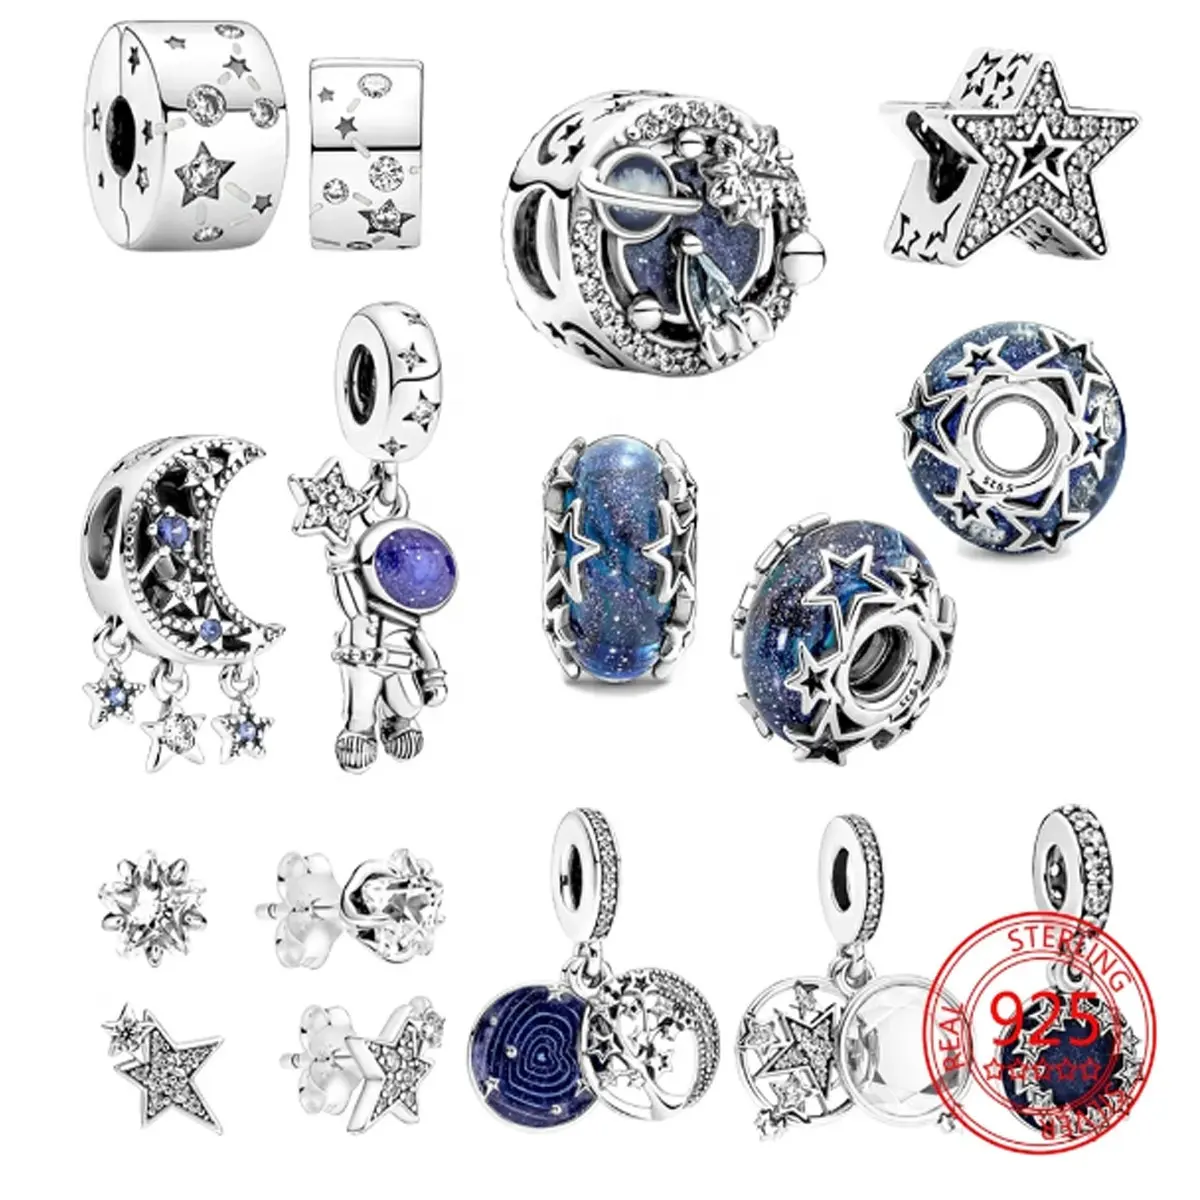 Commercio all'ingrosso più nuovo design fai da te in argento sterling 925 gioielli perline stella charms fit bracciali creazione di gioielli